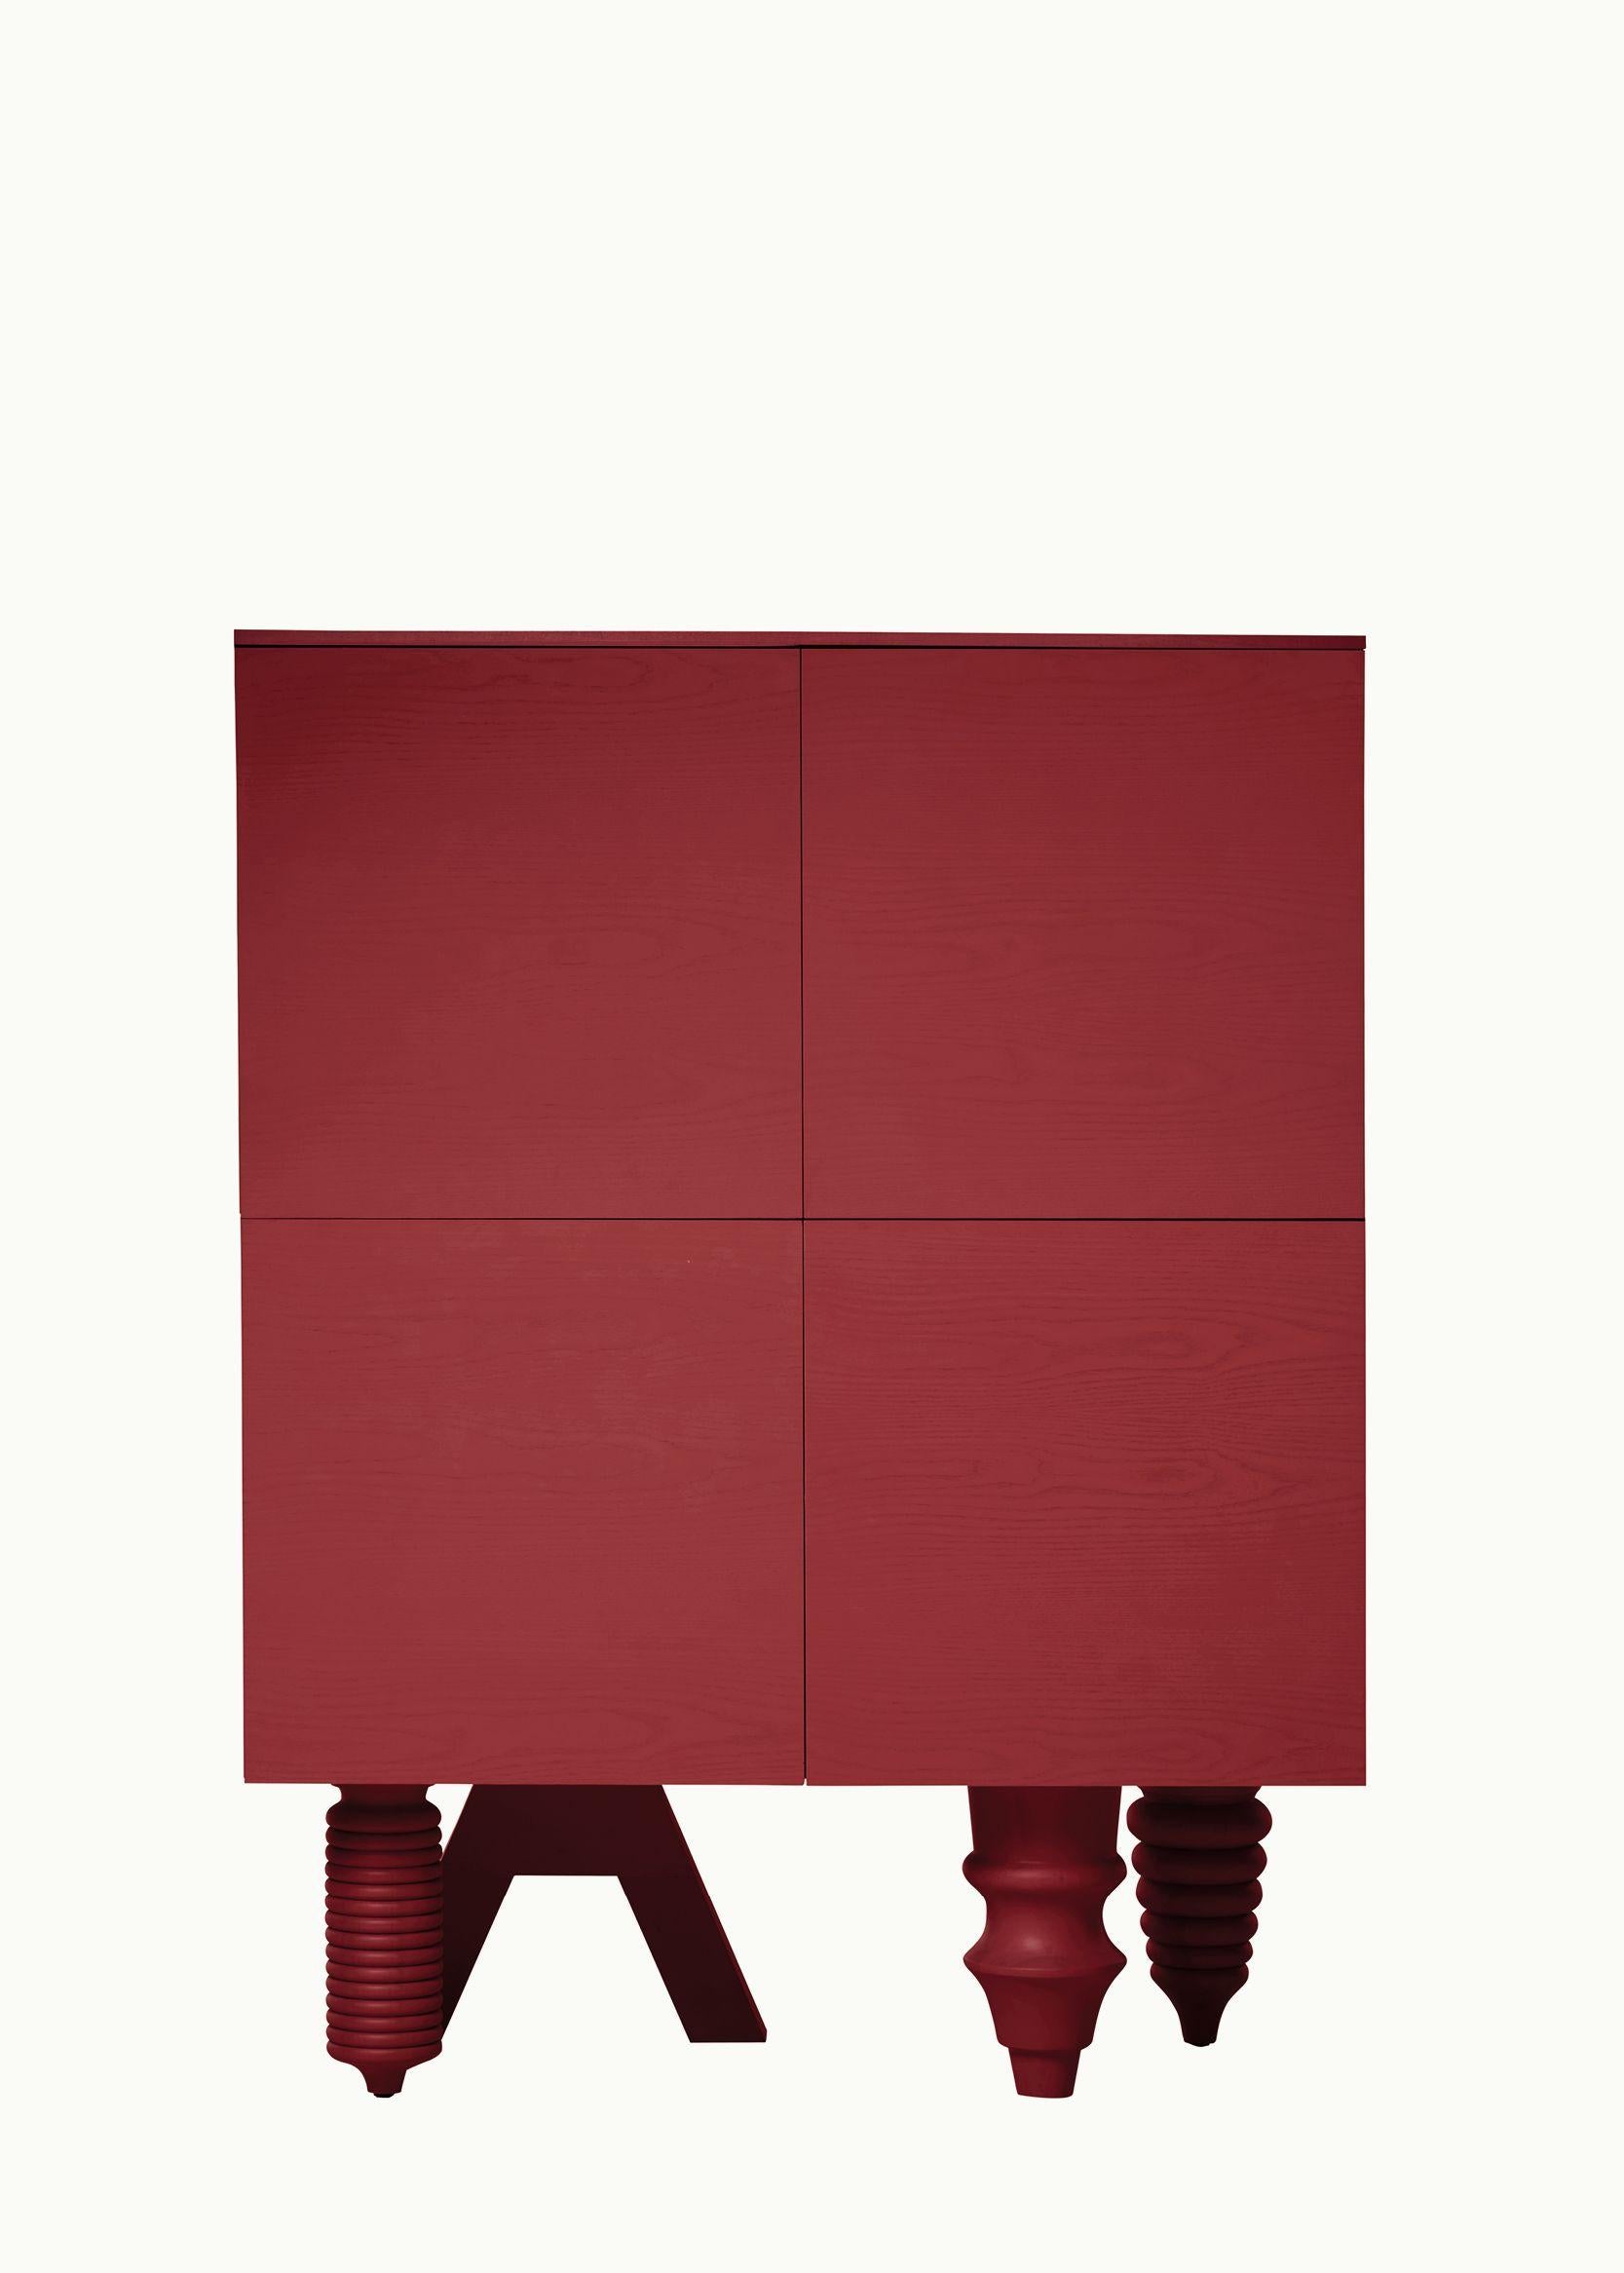 Mehrstöckiger Schrank aus roter Esche von Jaime Hayon für BD Barcelona

Er kann mit zwölf ausgeklügelten Beinoptionen, individuell gestaltbaren Oberflächen und Farben sowie einer Vielzahl von Stauraumvarianten einzigartig konfiguriert werden. Das